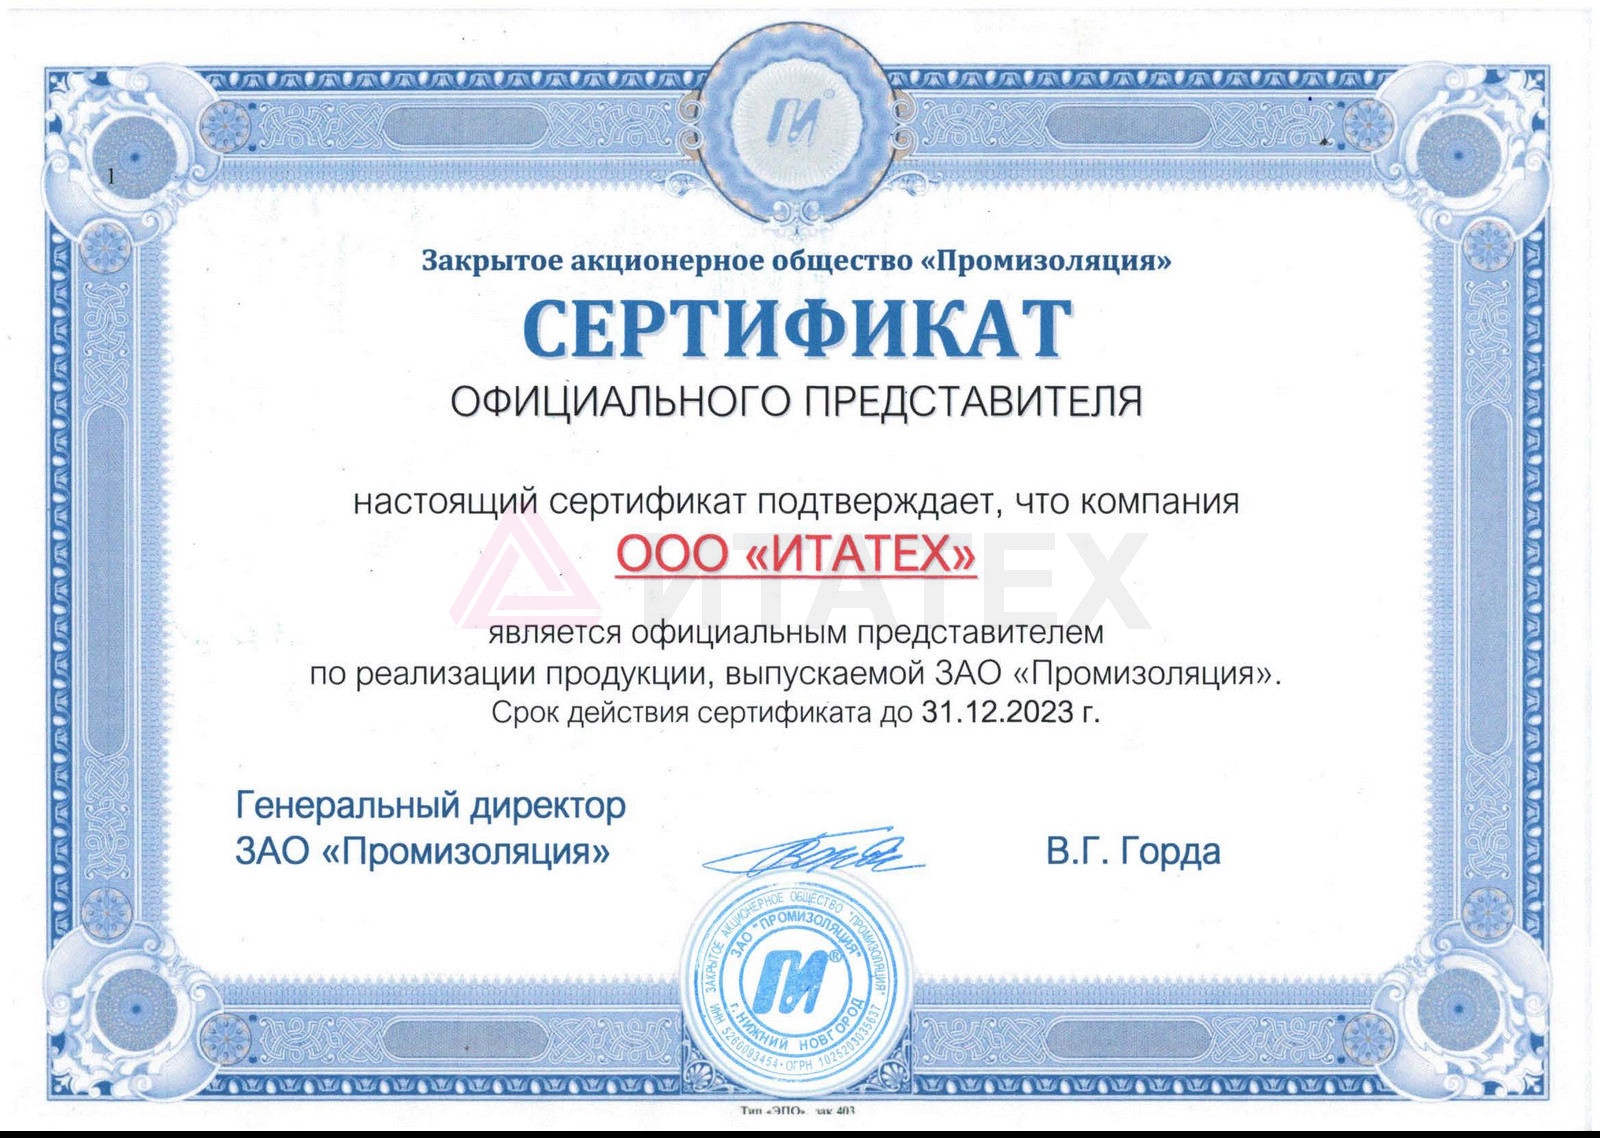 Сертификат Промизоляция